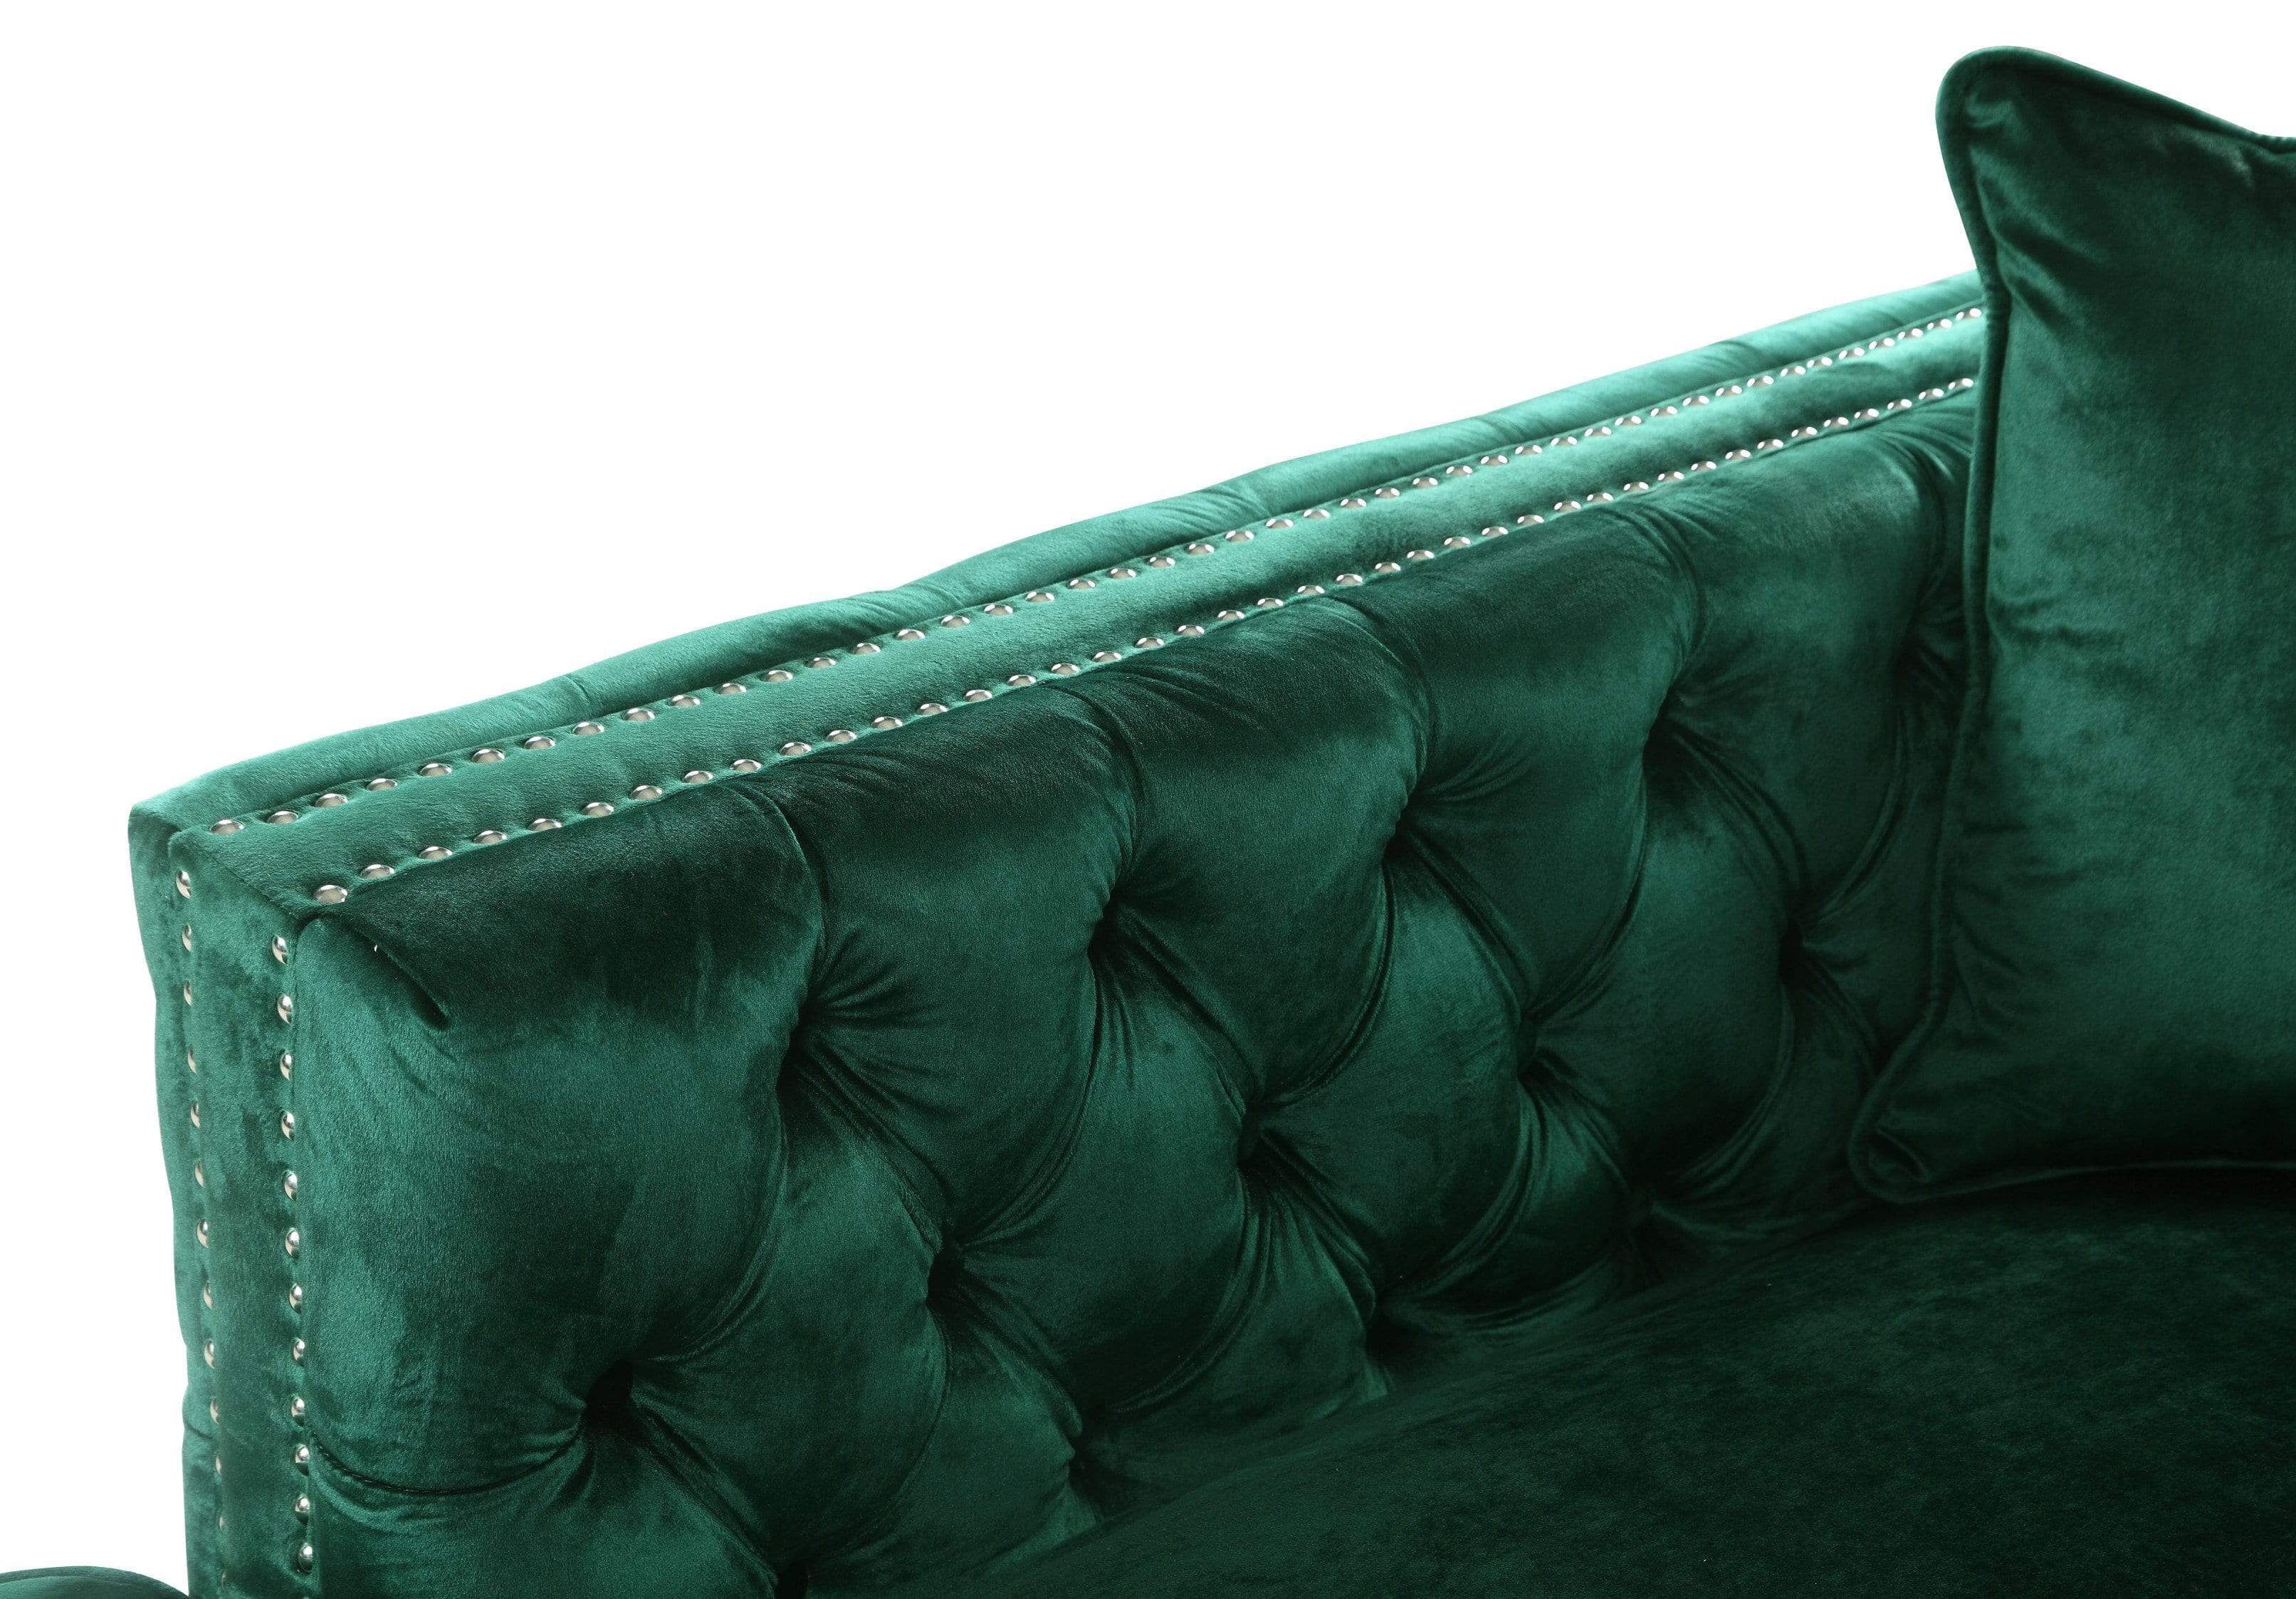 Monet Left Facing Tufted Velvet Sectional Sofa